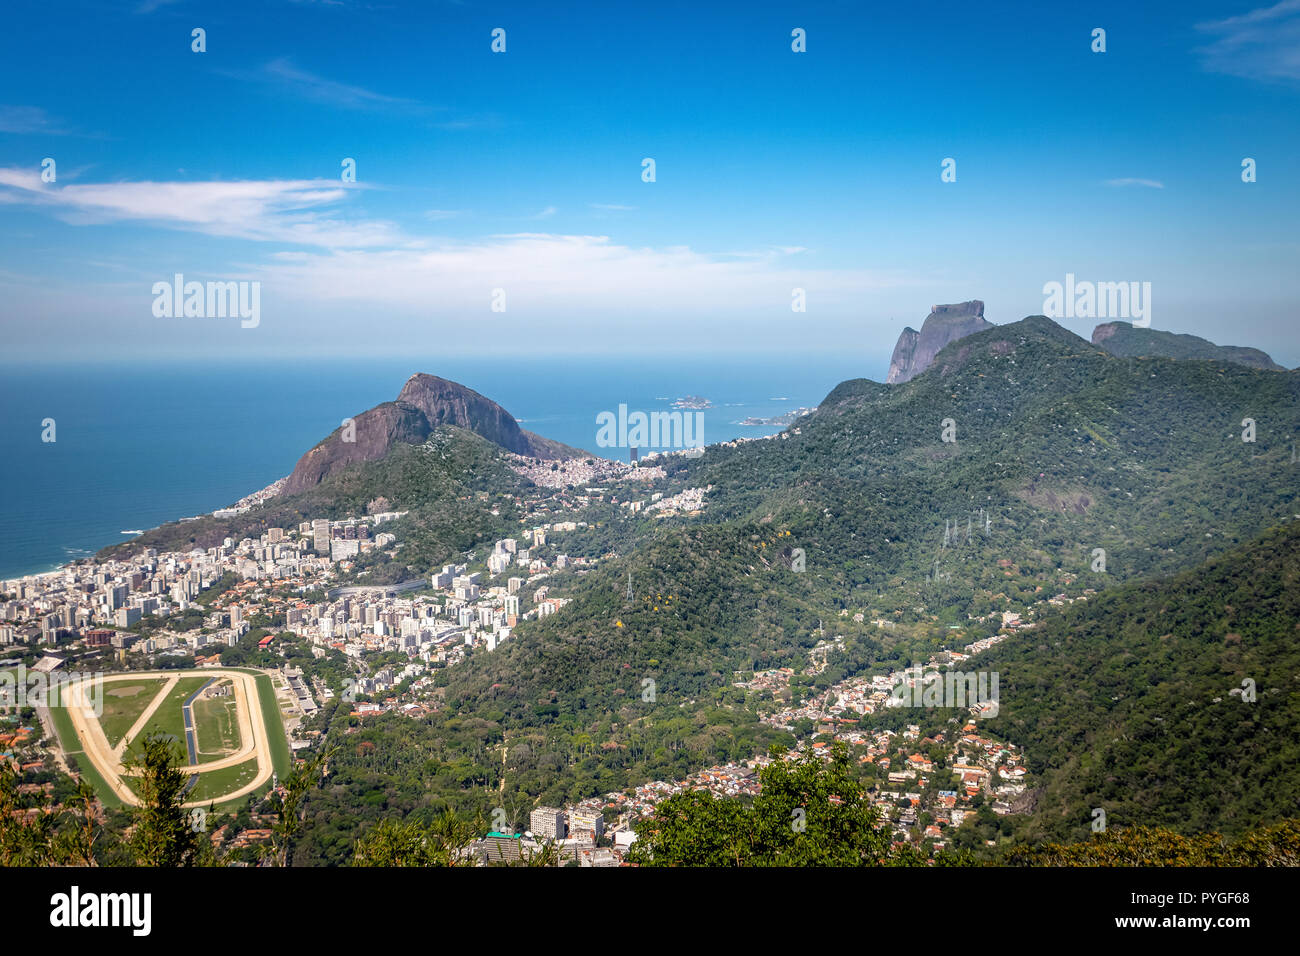 Aerial view of Rio de Janeiro. Two Brothers Hill (Morro Dois Irmaos) and Pedra da Gavea Stone - Rio de Janeiro, Brazil Stock Photo